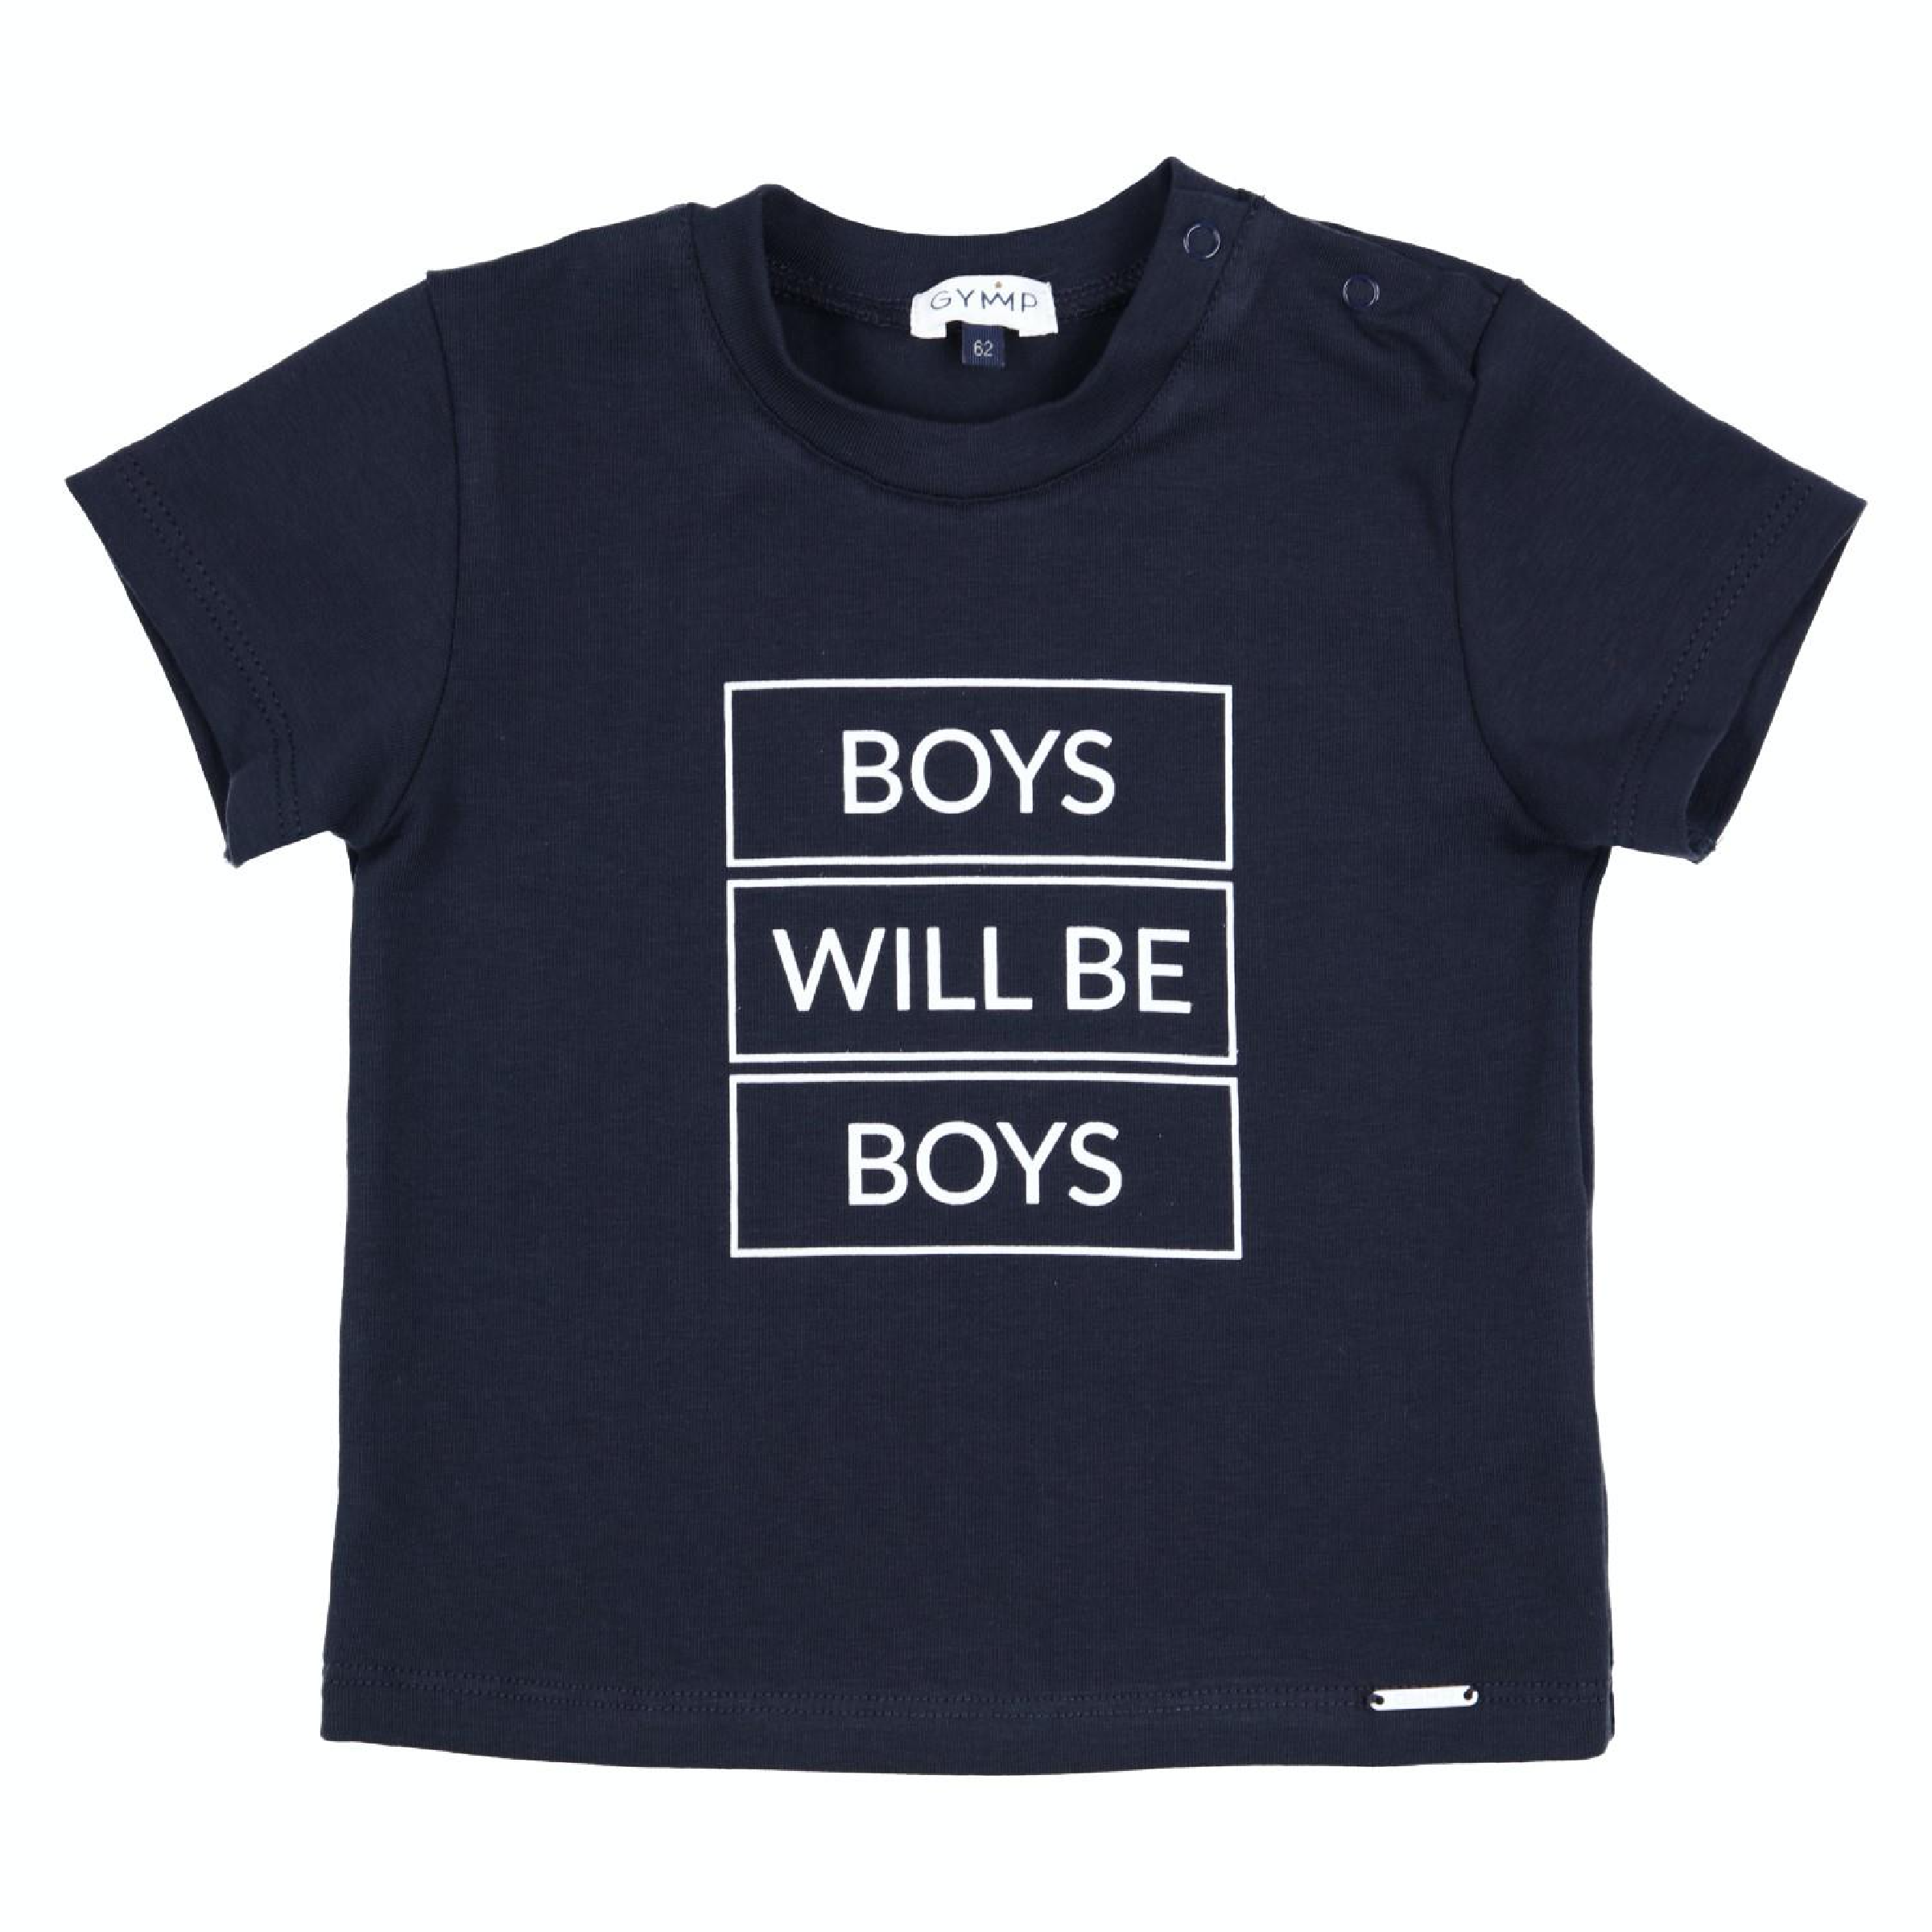 Baby jongens T-SHIRT - BOYS WILL BE BOYS -  van Gymp in de kleur Marine in maat 86.